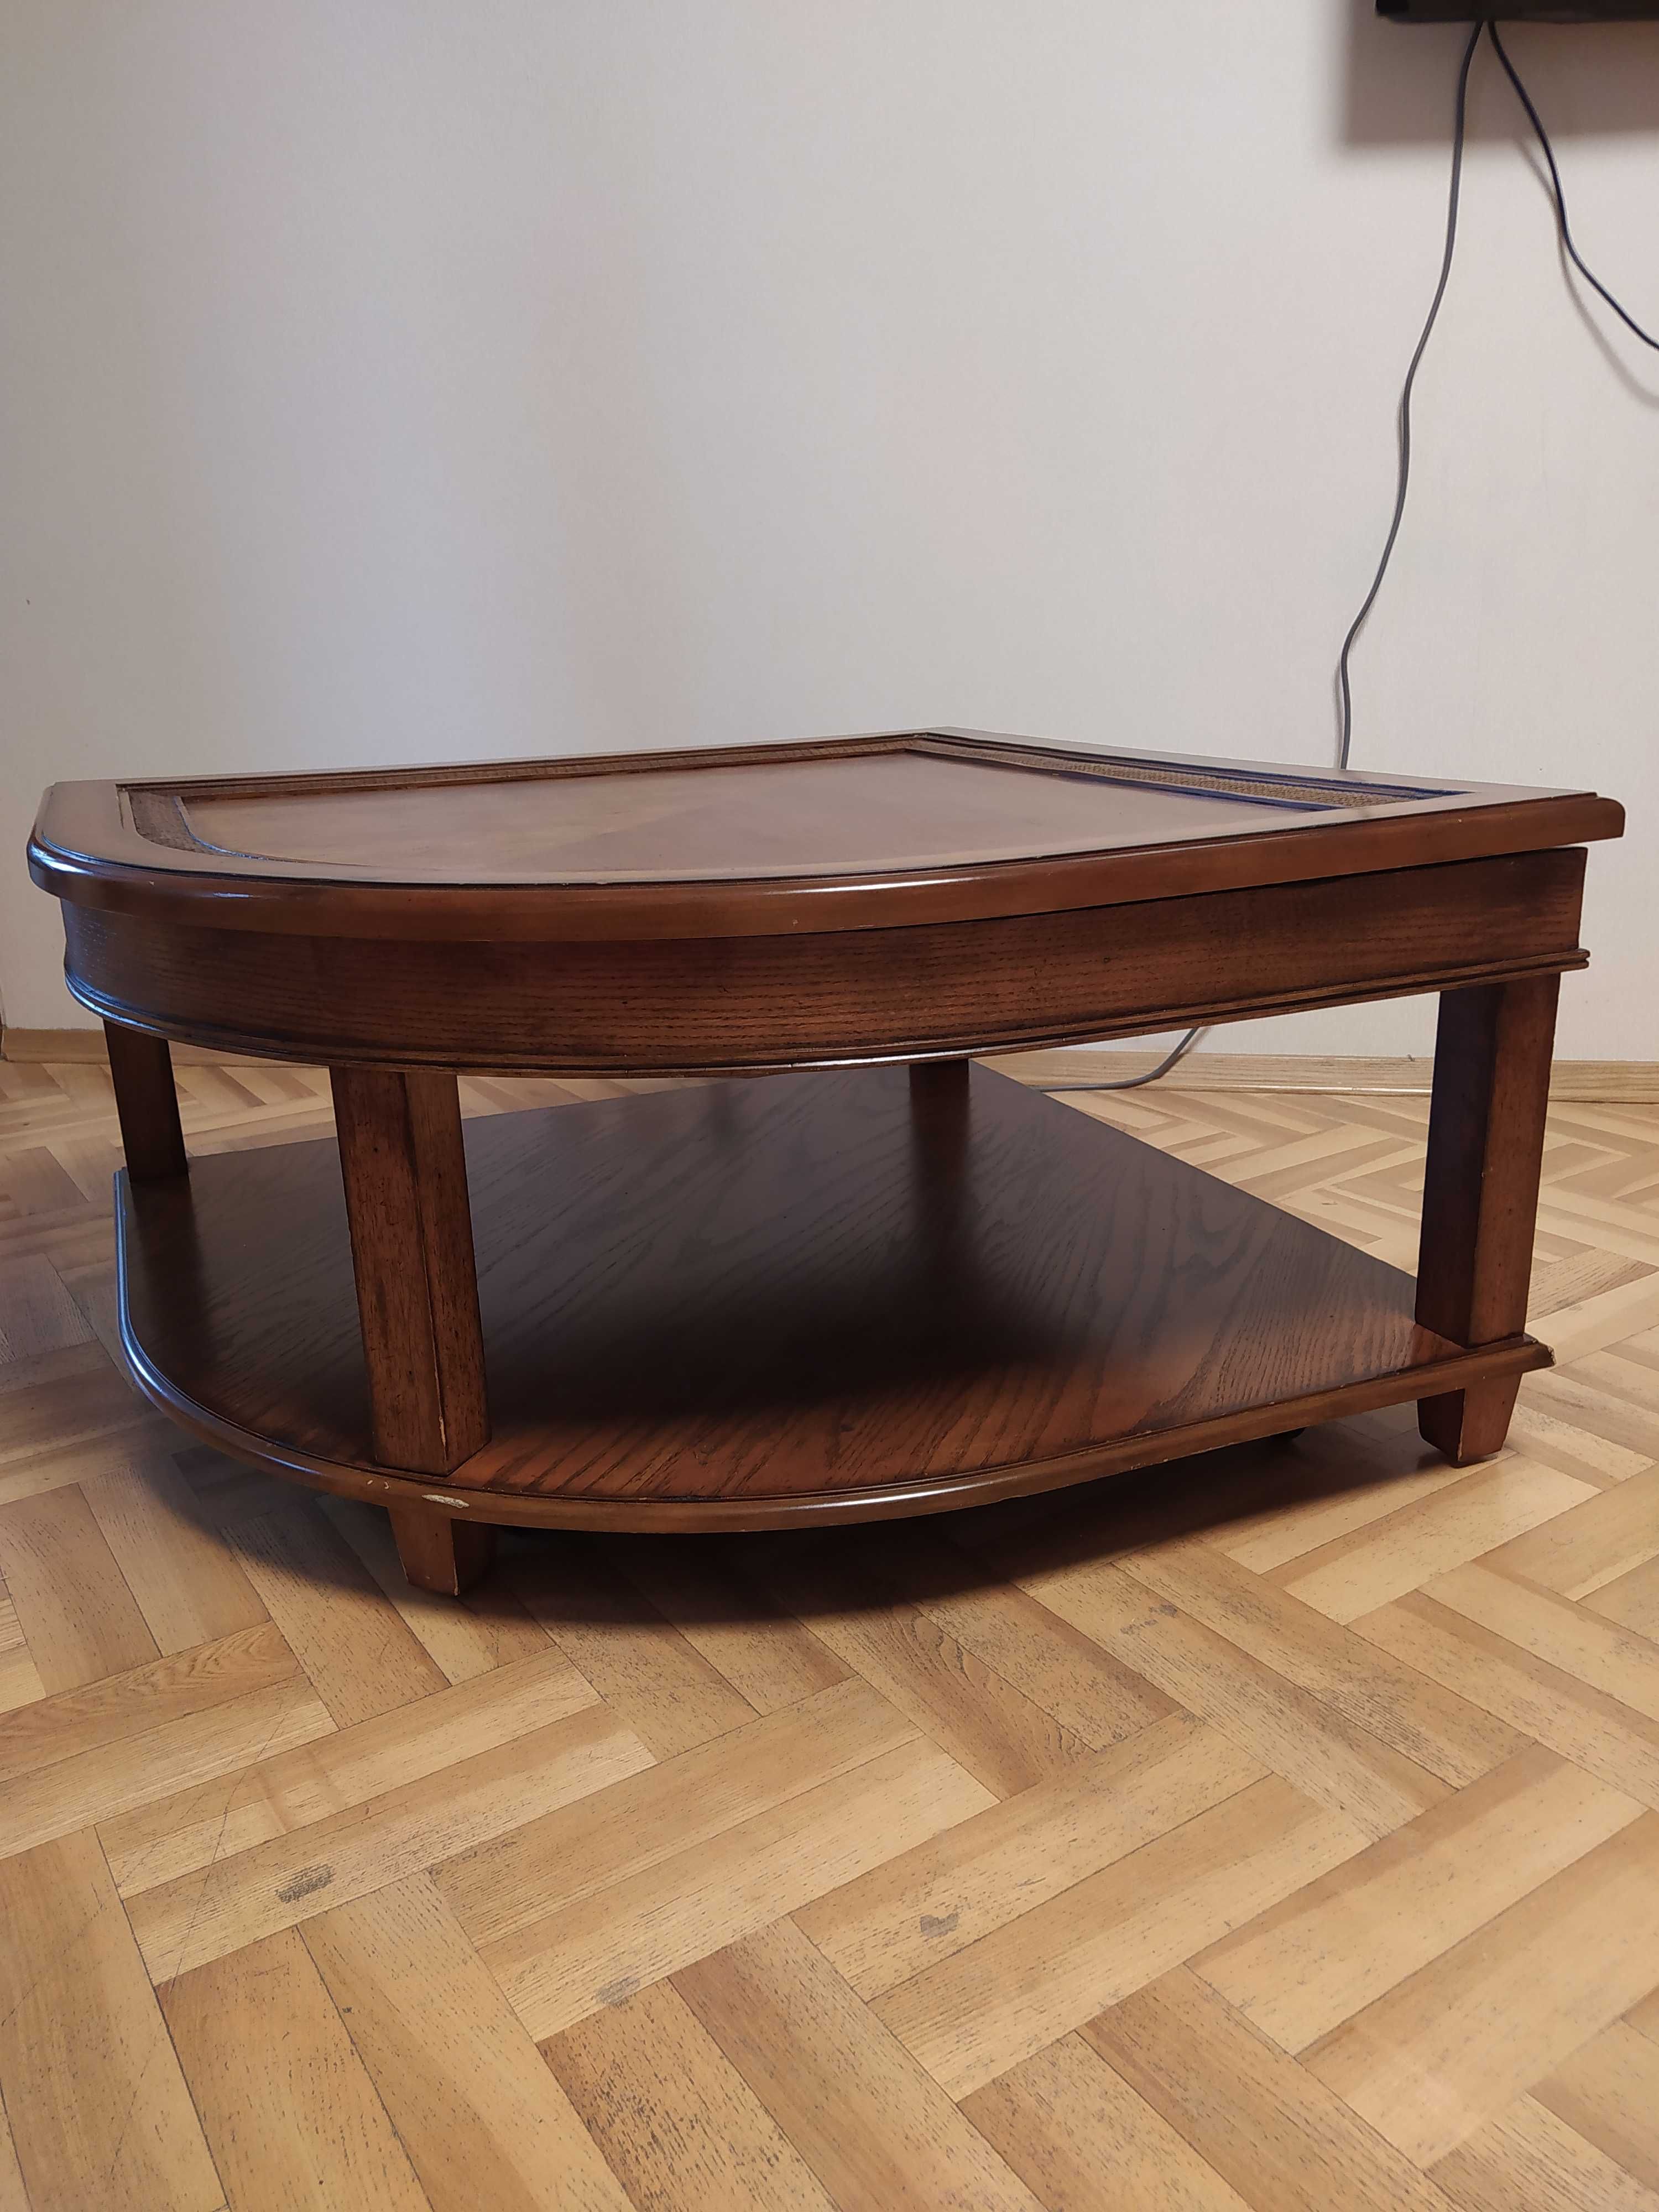 Дерев'яний журнальний стіл-трансформер зі скляною вставкою